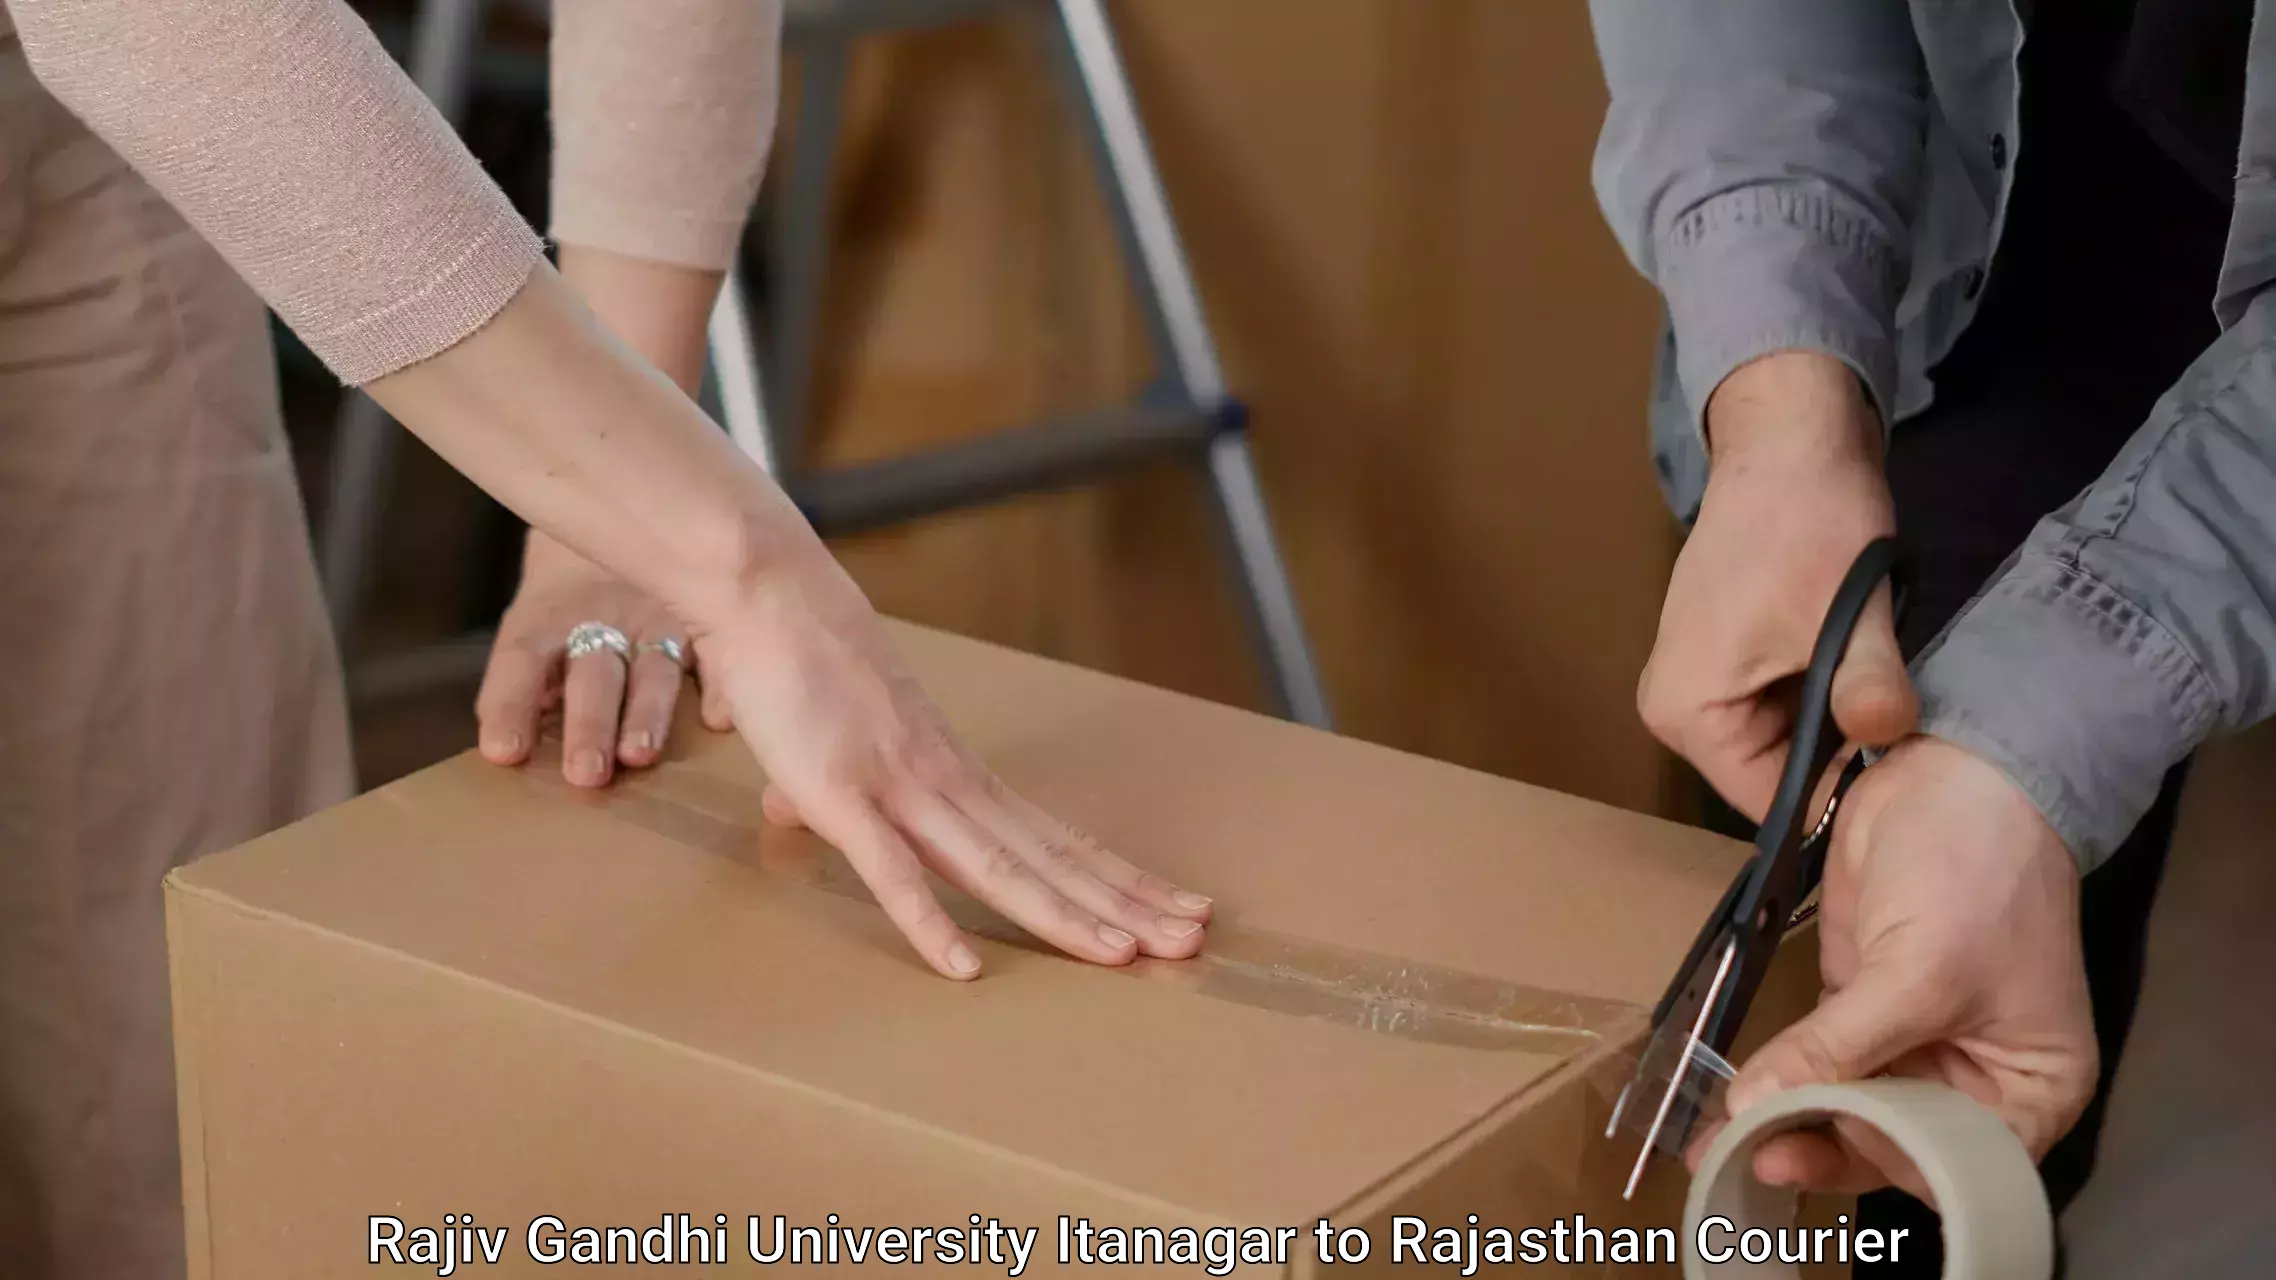 Efficient packing and moving in Rajiv Gandhi University Itanagar to Bandikui